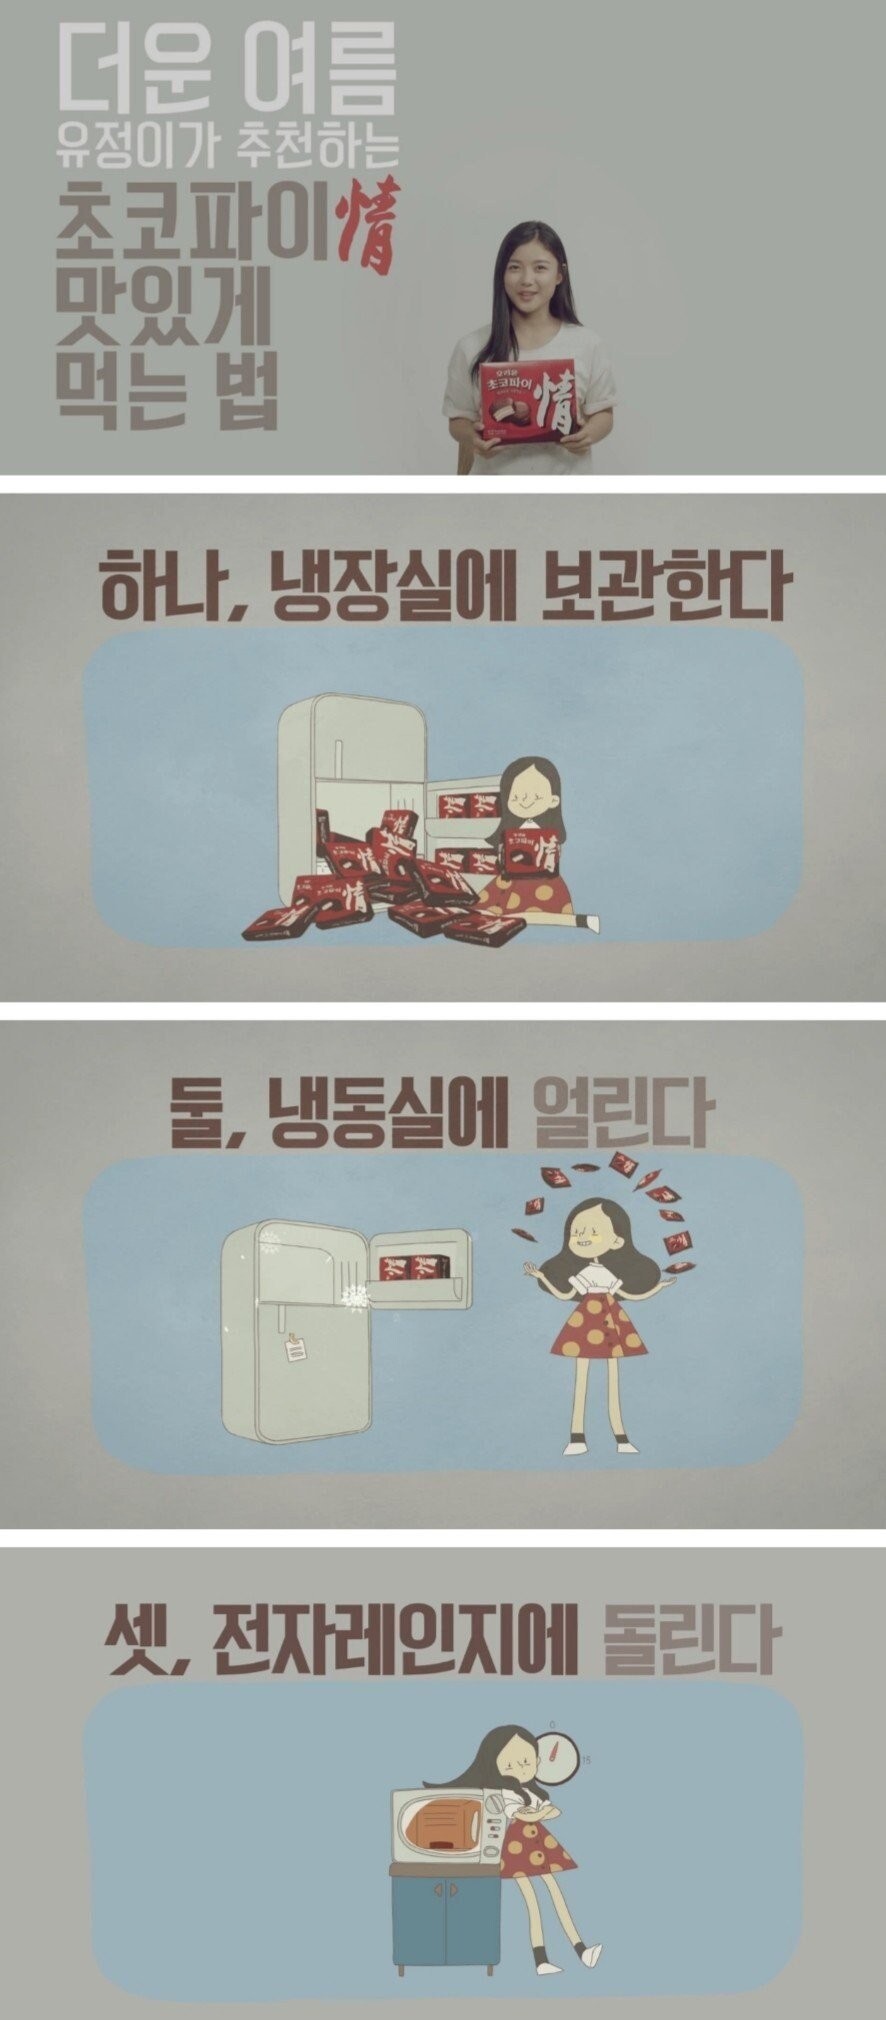 배우 김유정이 알려주는 초코파이 맛있게 먹는법.jpg